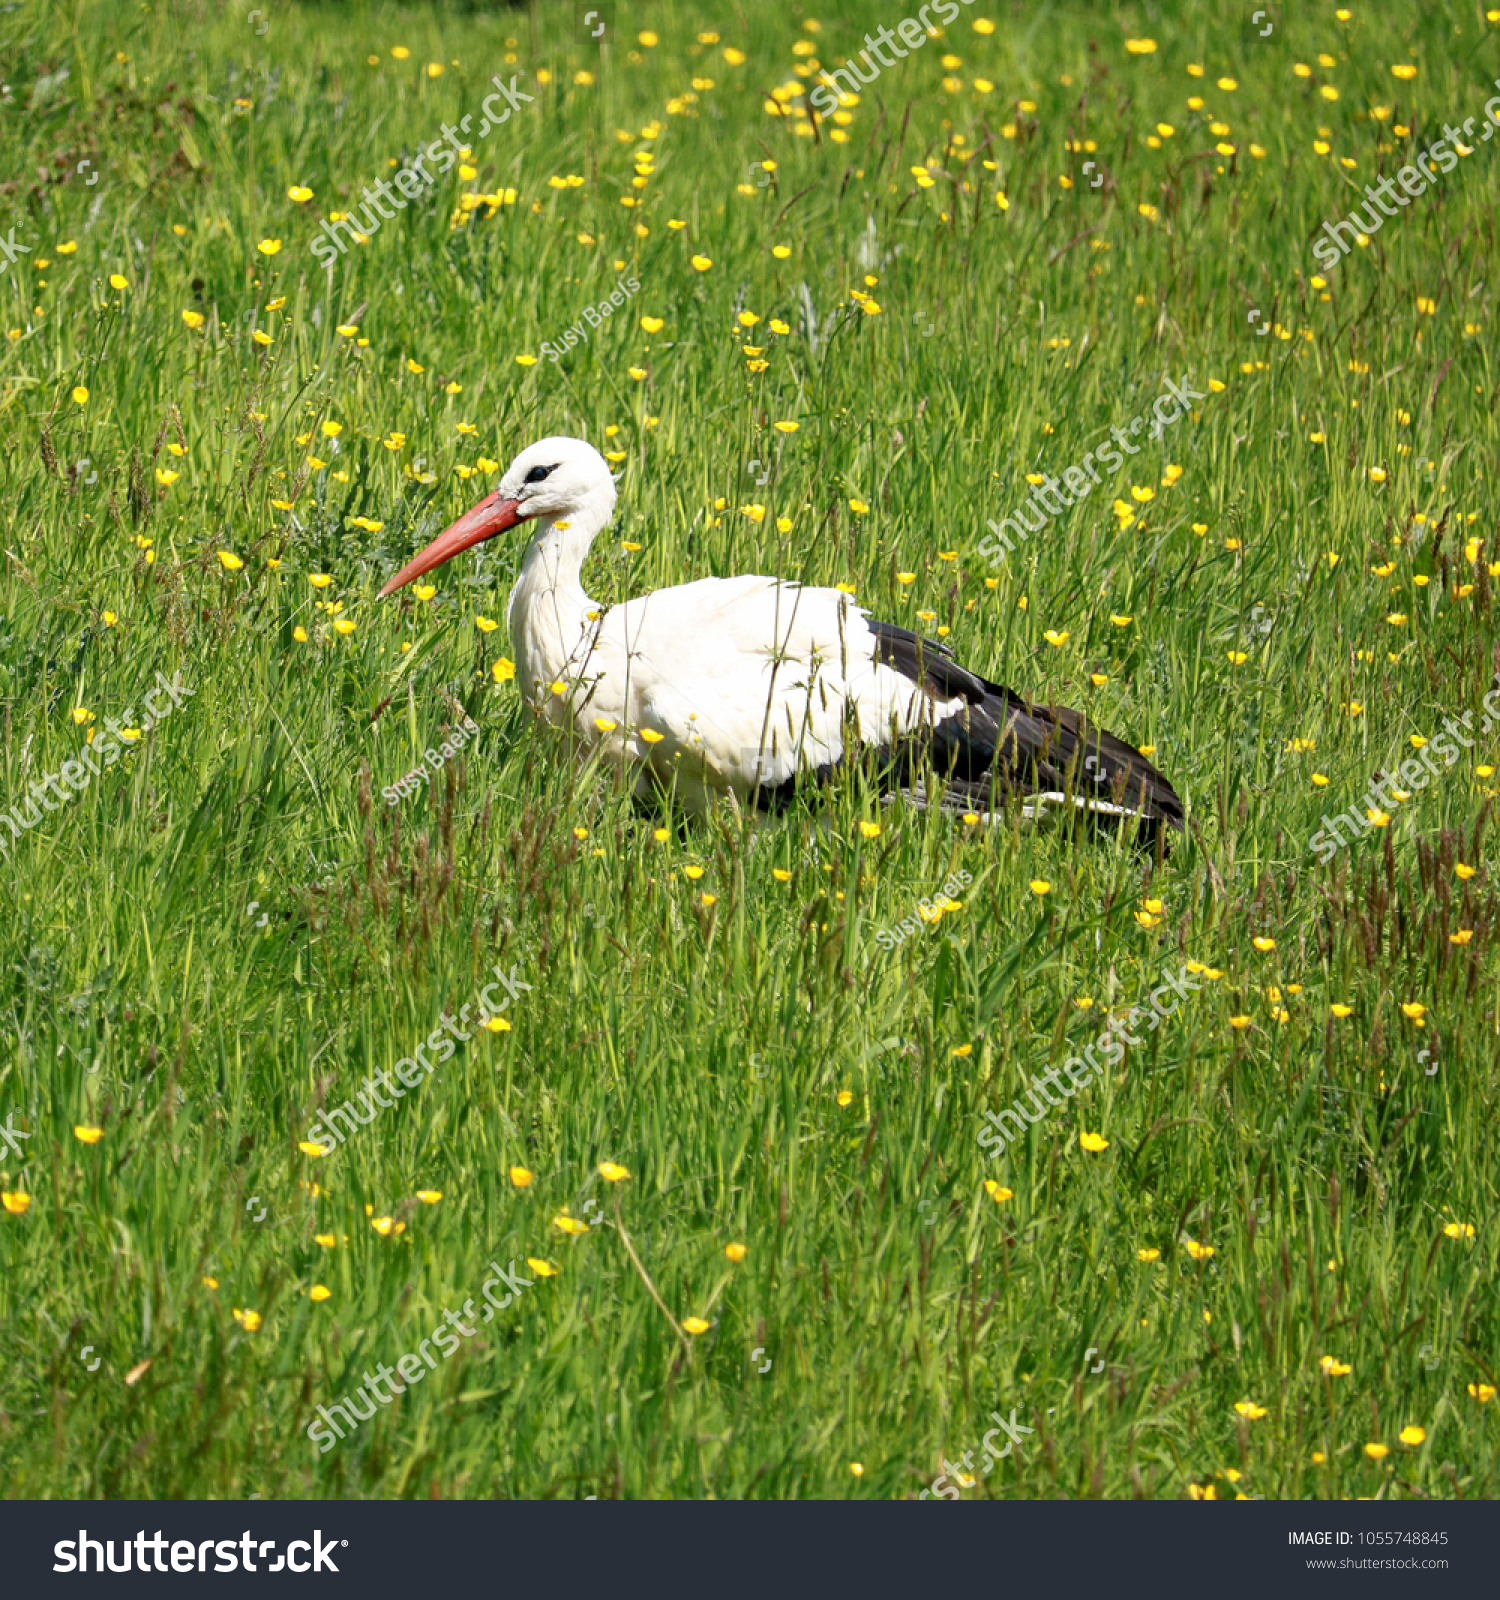 lovely stork in the grass #1055748845